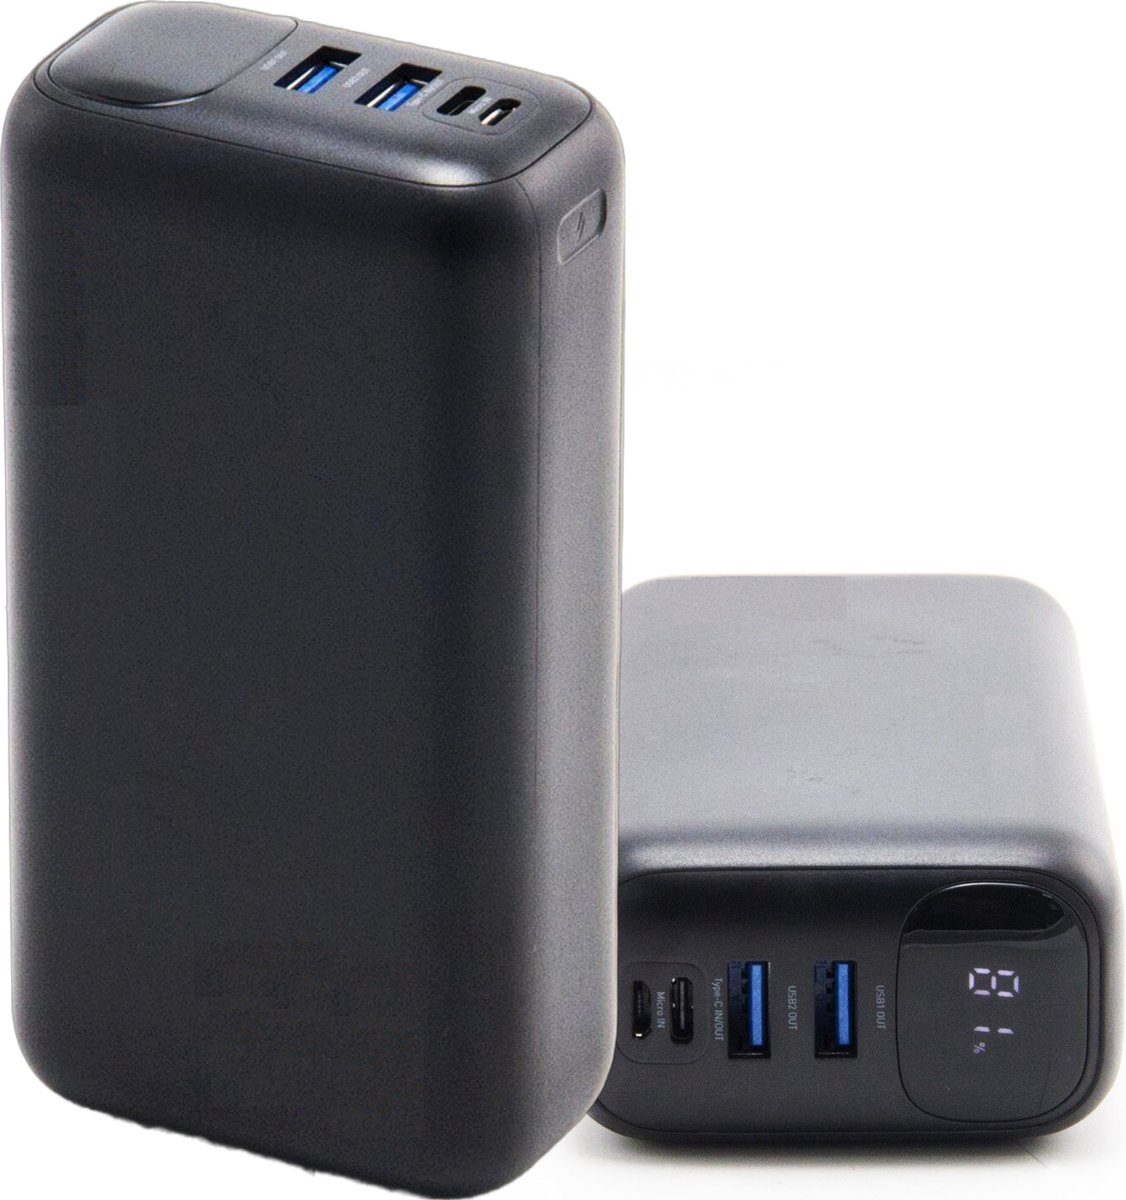 Snellaad Powerbank 30.000 mAh - 22.5W Power Charge - 2x USB-A Quick Charge + 1x USB C Powerbank 30000mAh met Batterij Indicator - Oplaadbare Batterij met Snellaadfunctie